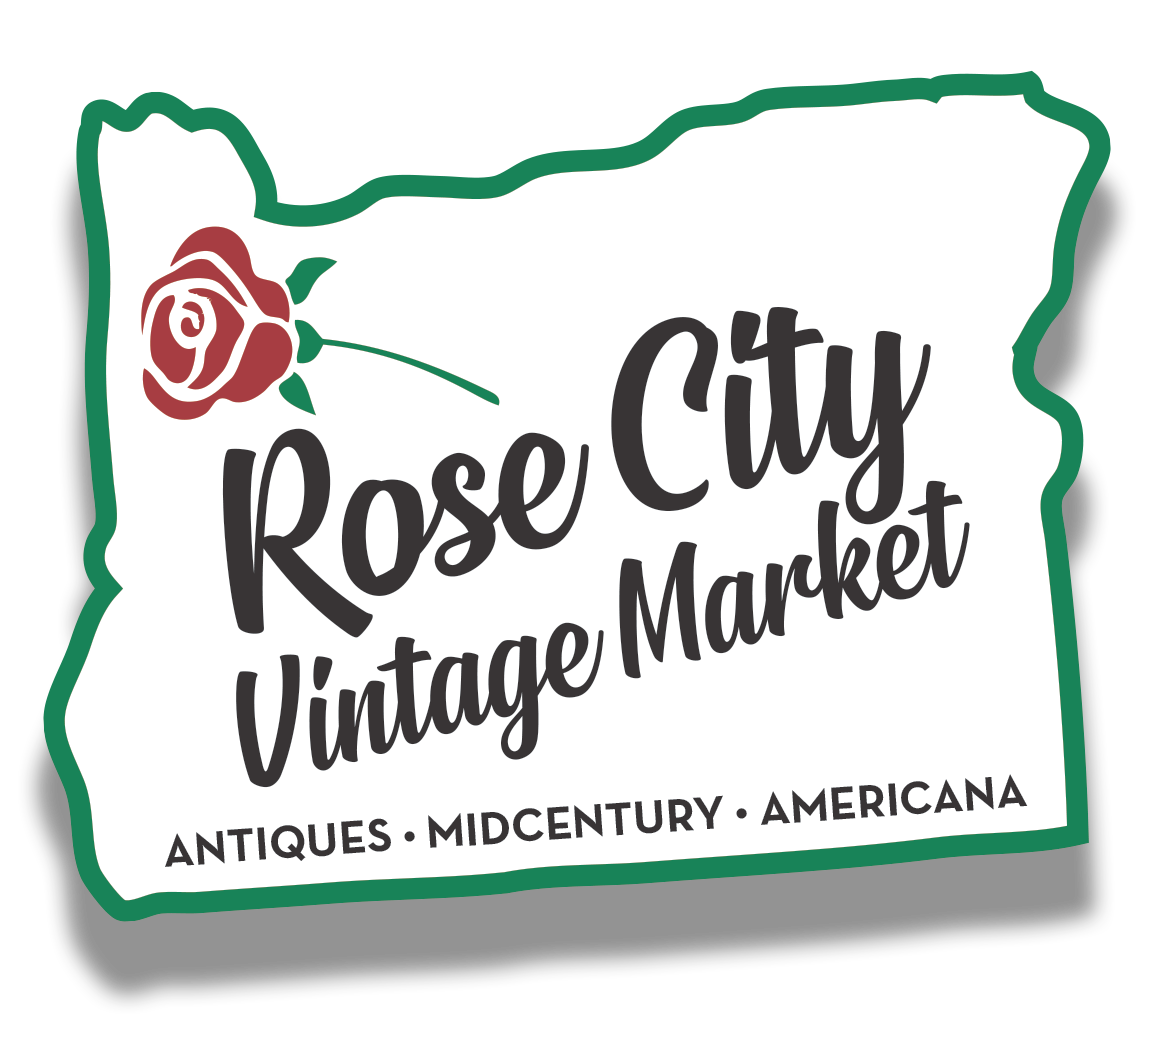 Rose City Vintage Market